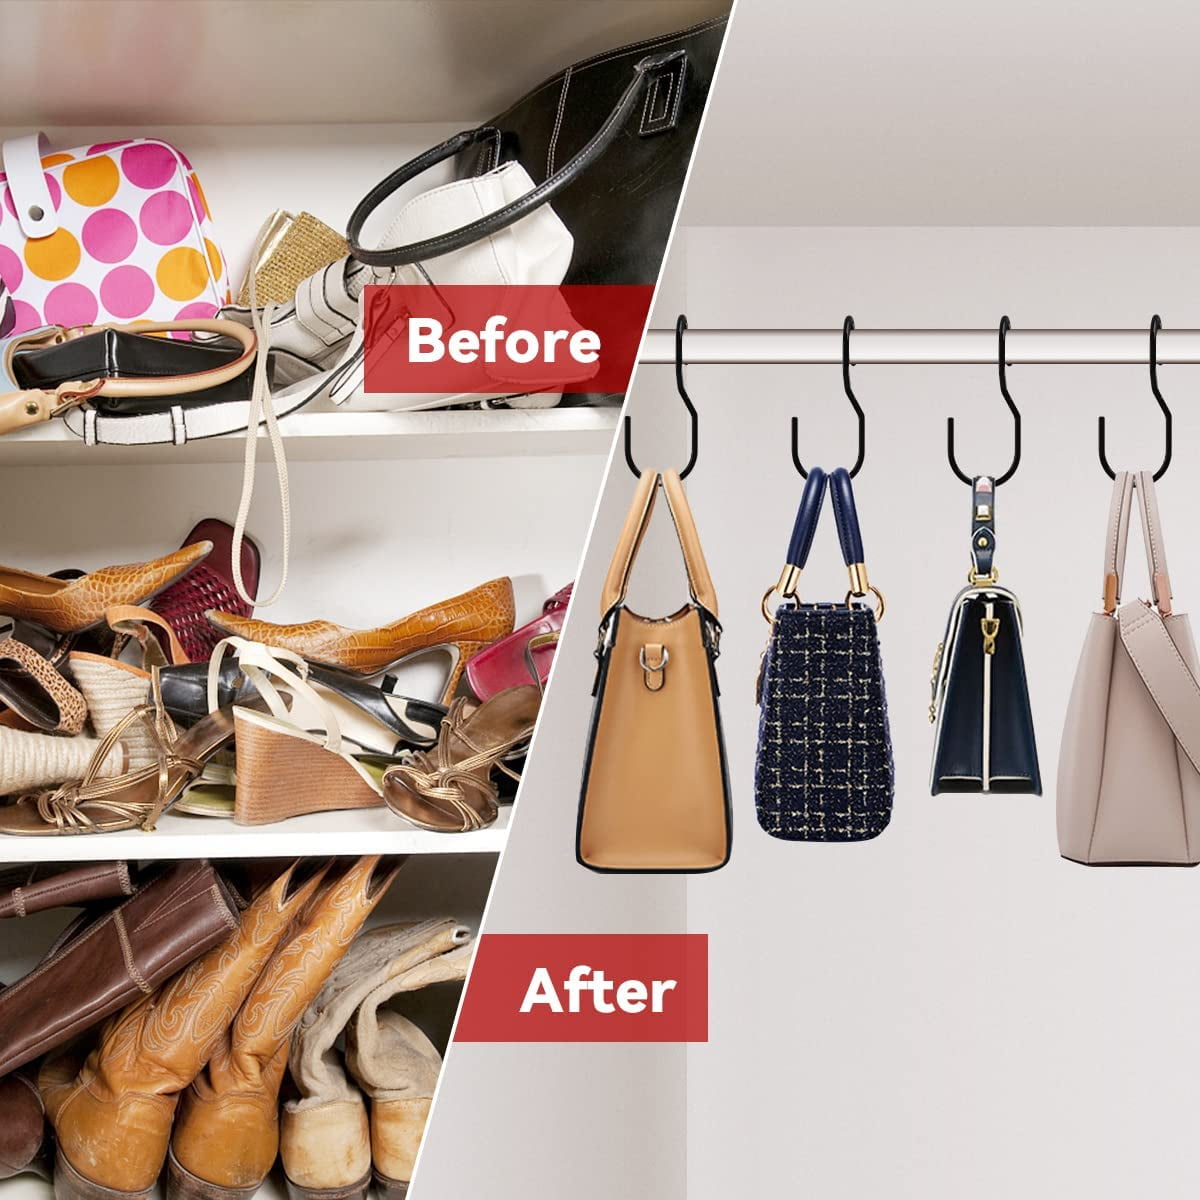 Detachable Hanging Handbag Purse Organizer For Closet, Purse Bag Storage  Holder For Wardrobe Closet With 4 Shelves Space Saving Purse Organizers |  Fruugo NO